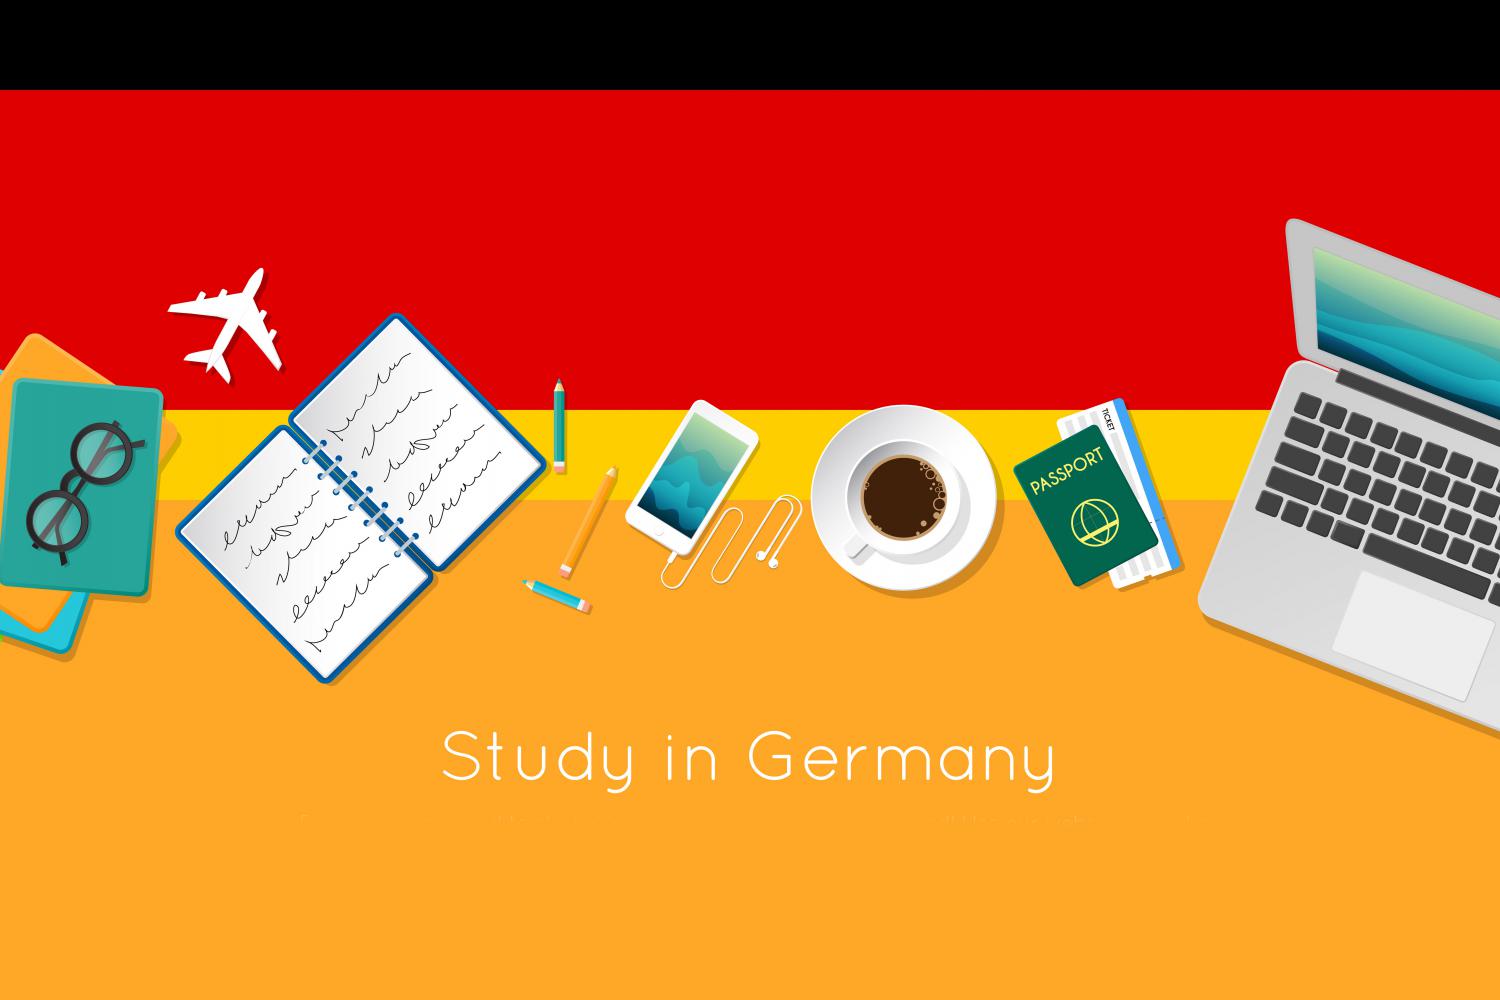 Du học trao đổi văn hóa Đức